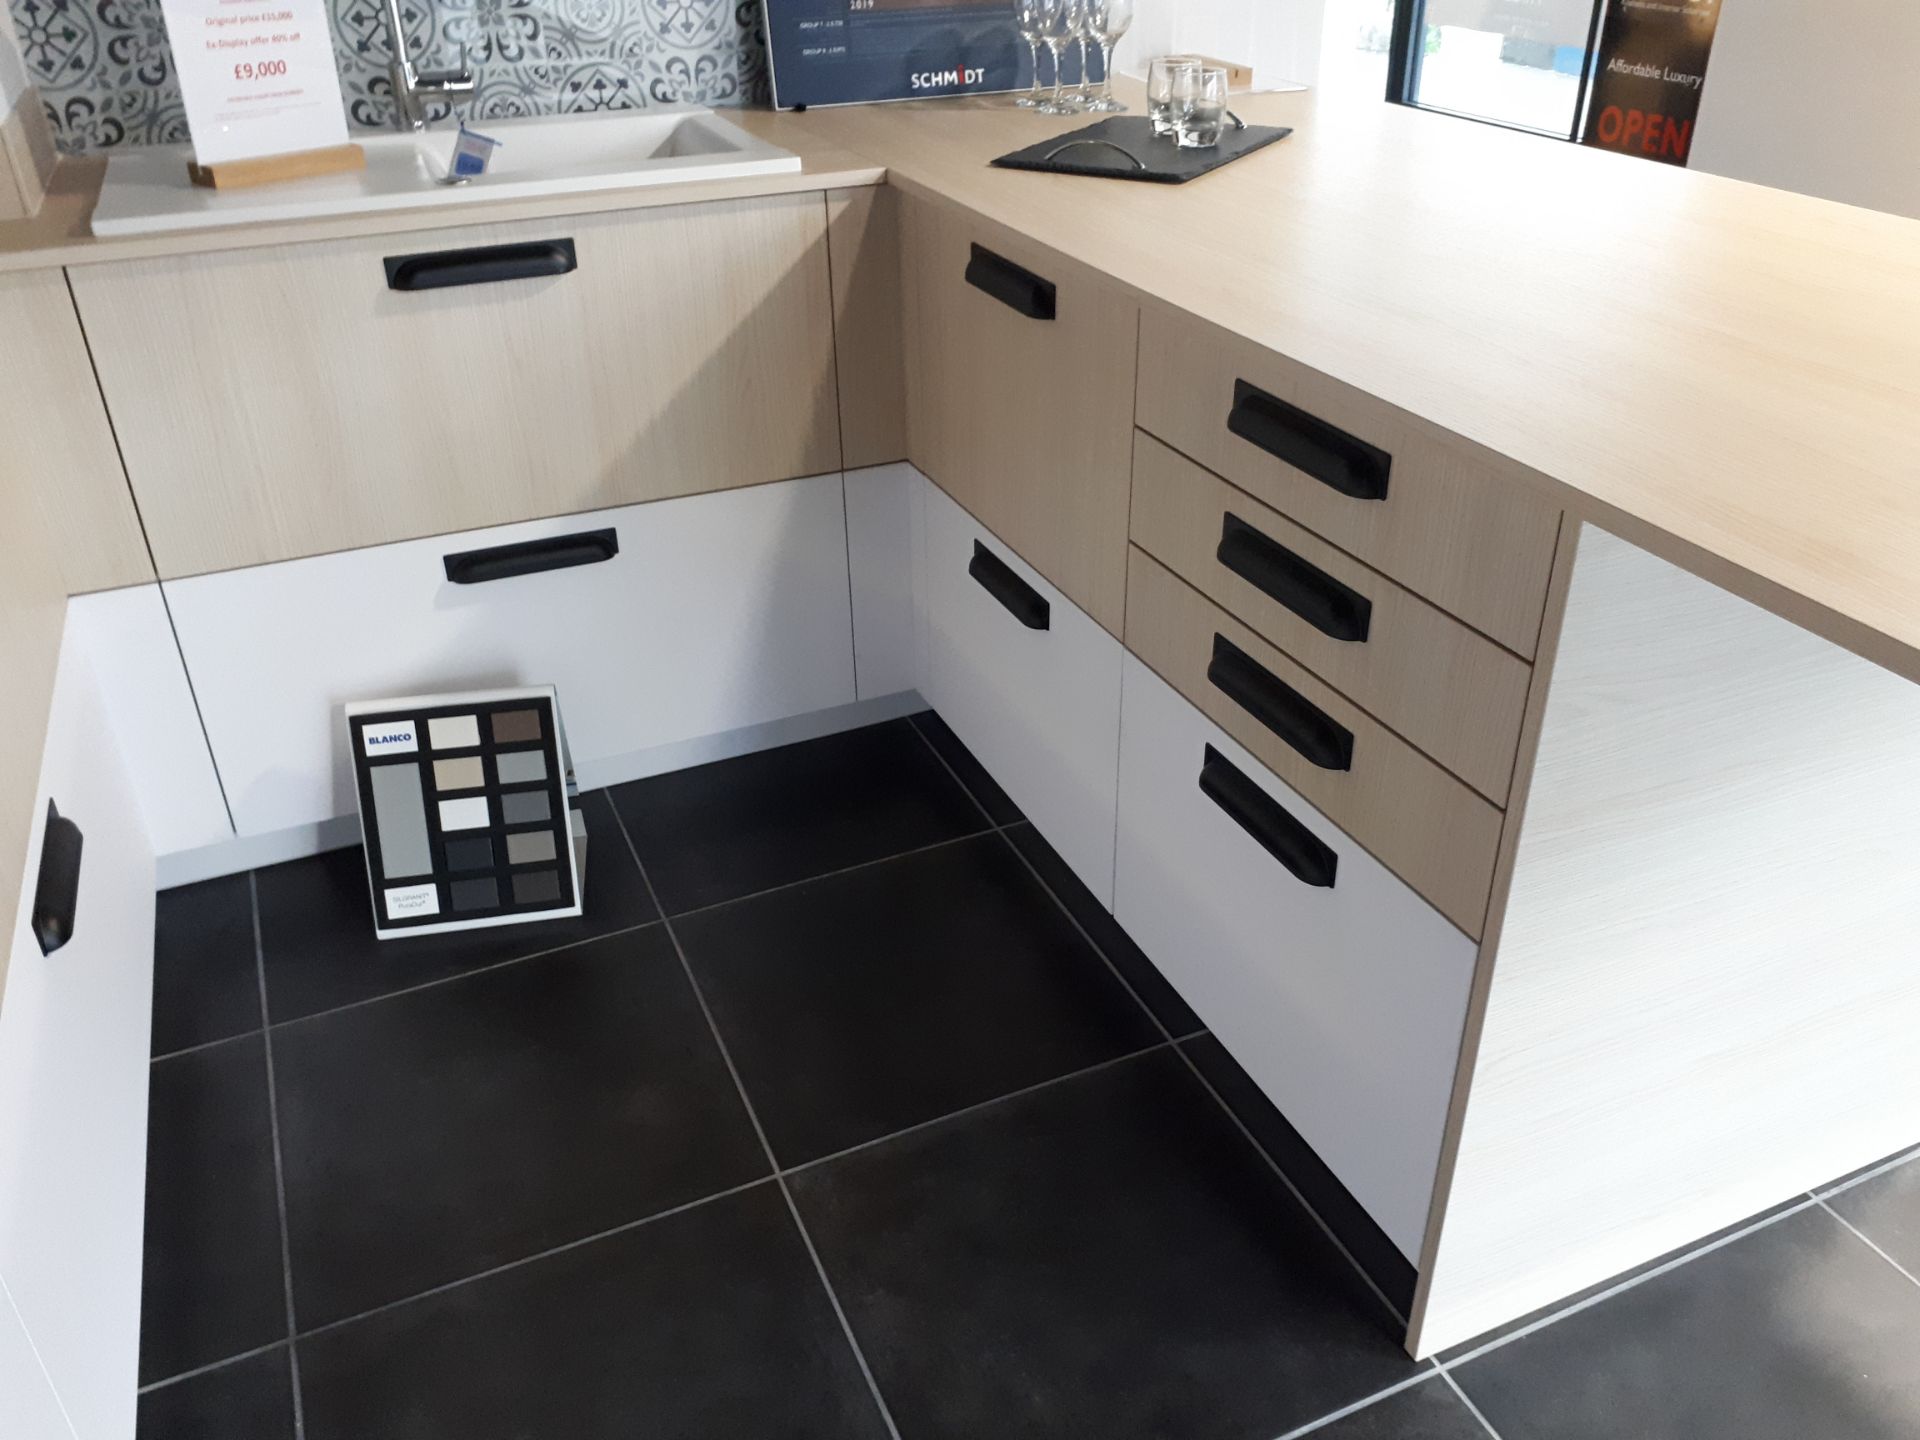 Schmidt Premium range display kitchen in Arcos Mix - Image 3 of 8